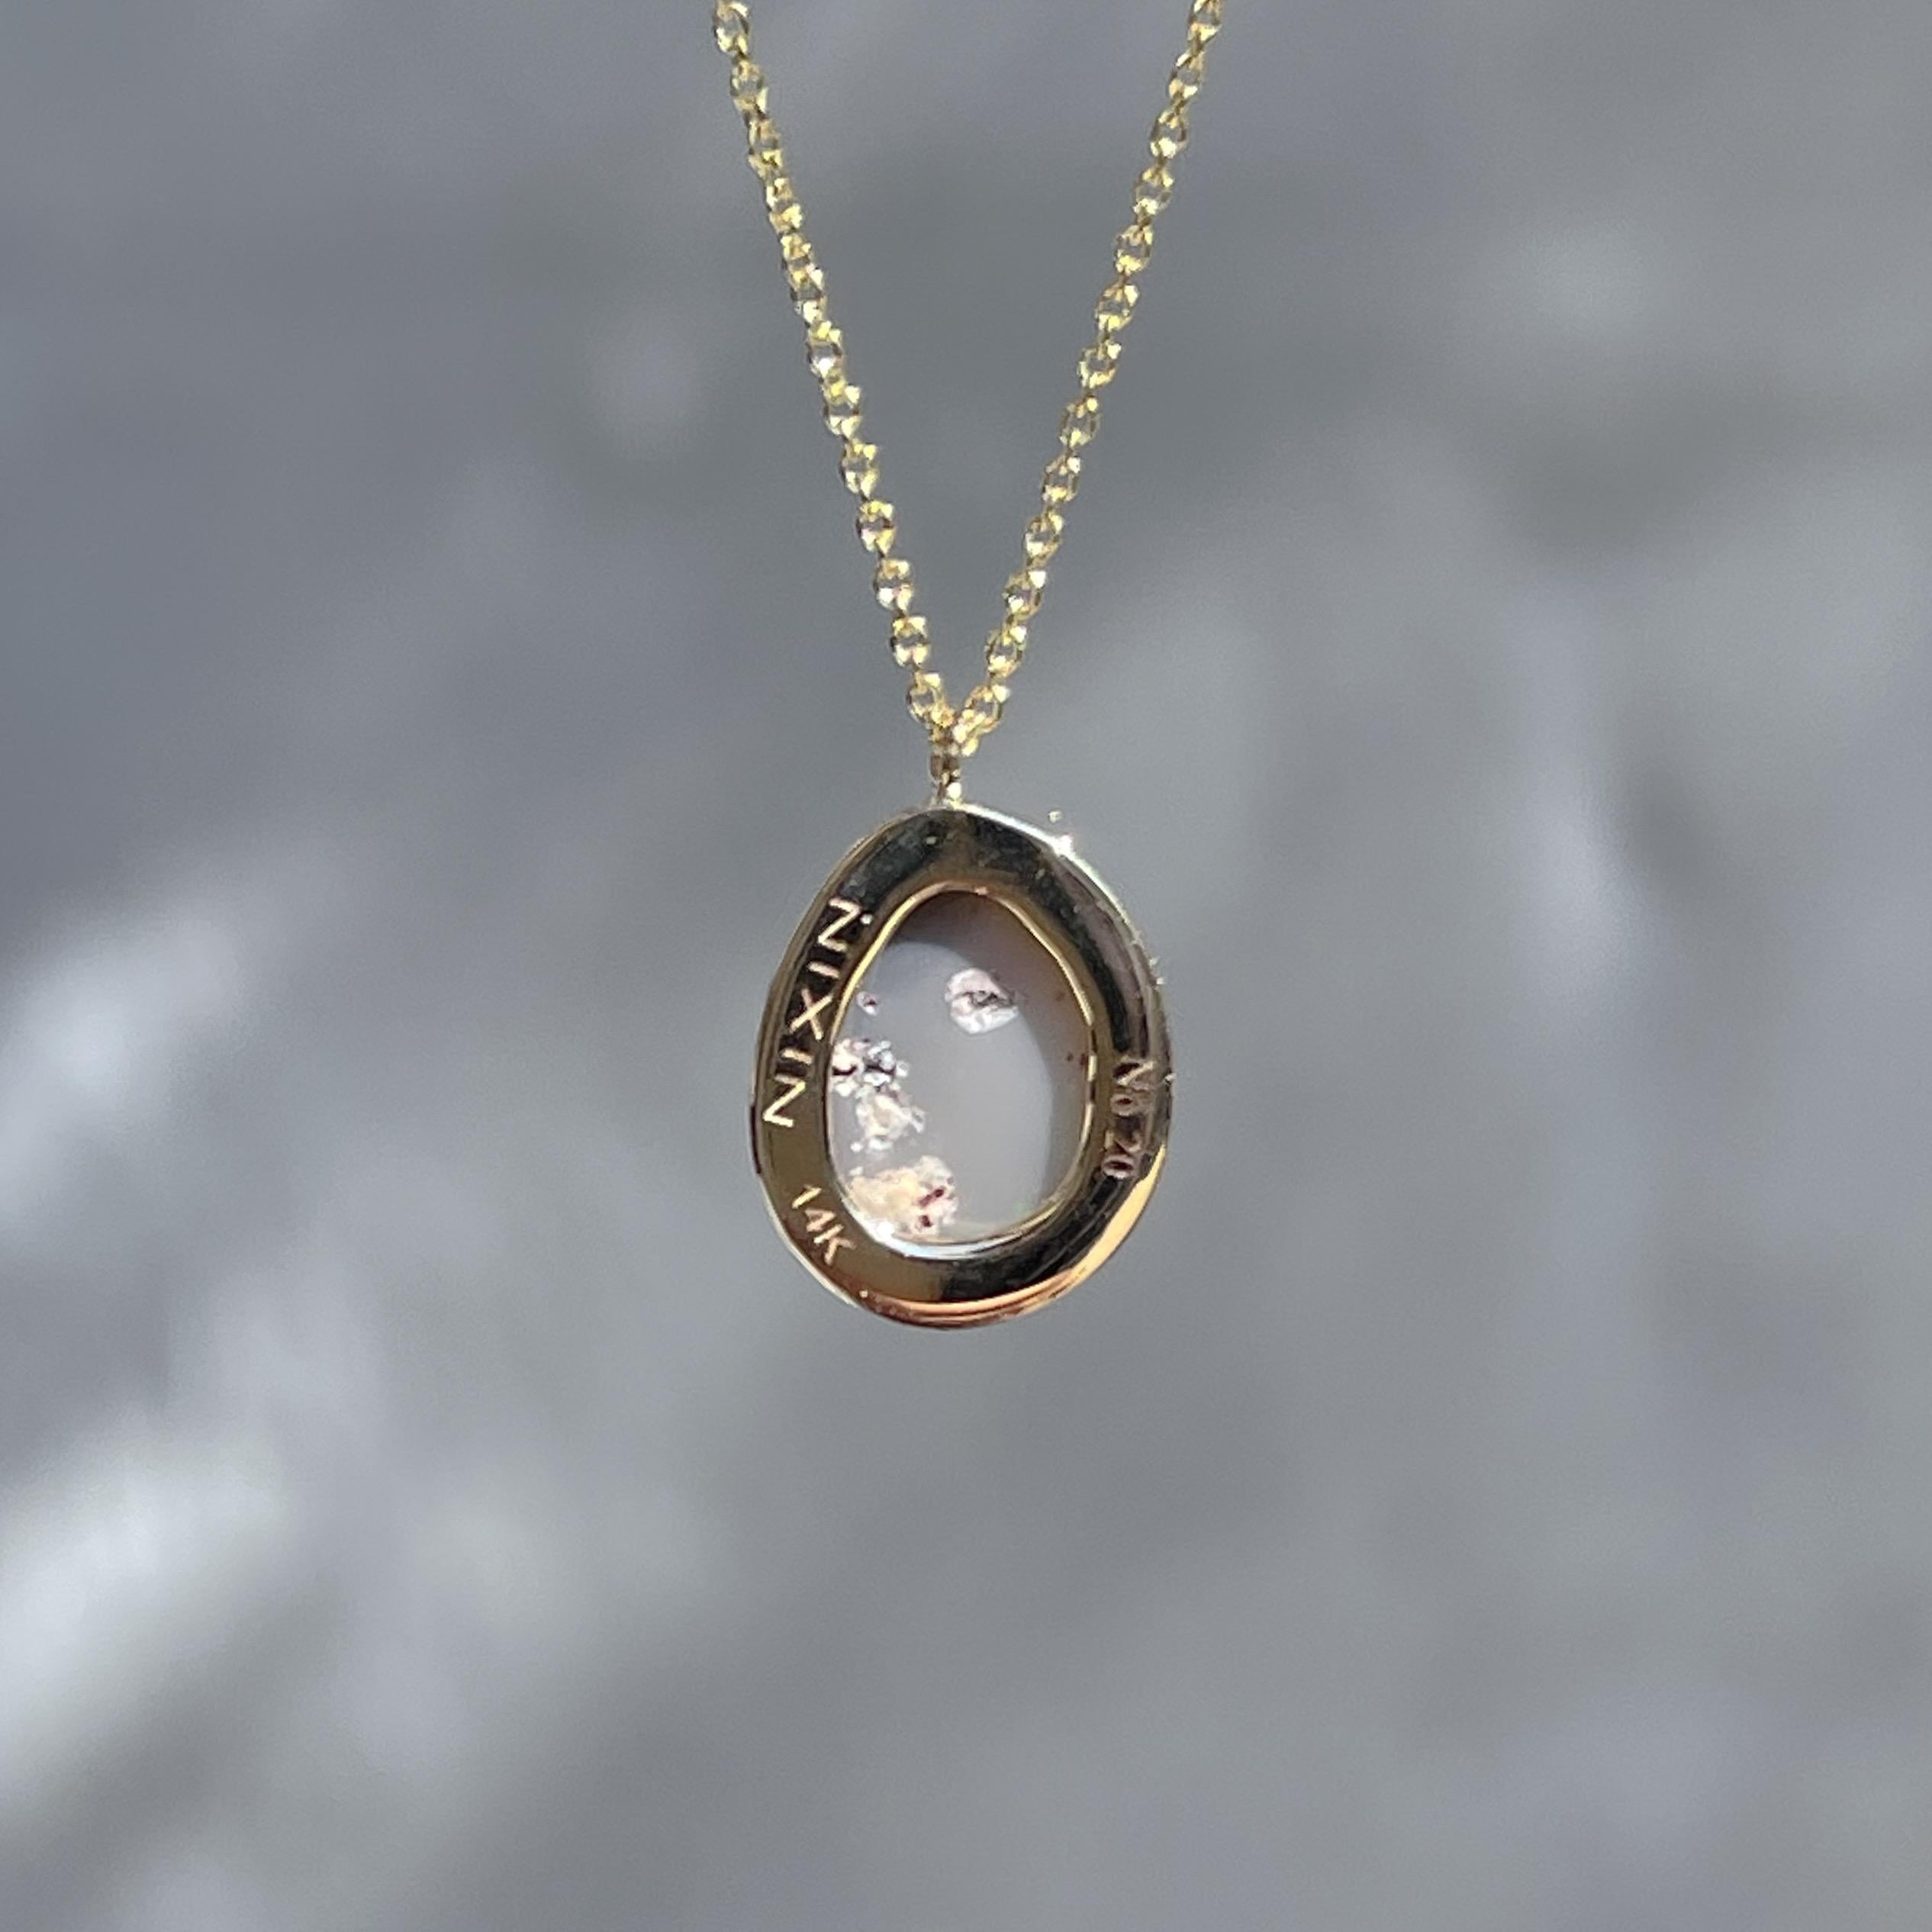 NIXIN Jewelry Unicorn Tear Australian Opal Necklace No. 20 in 14k Gold For Sale 4